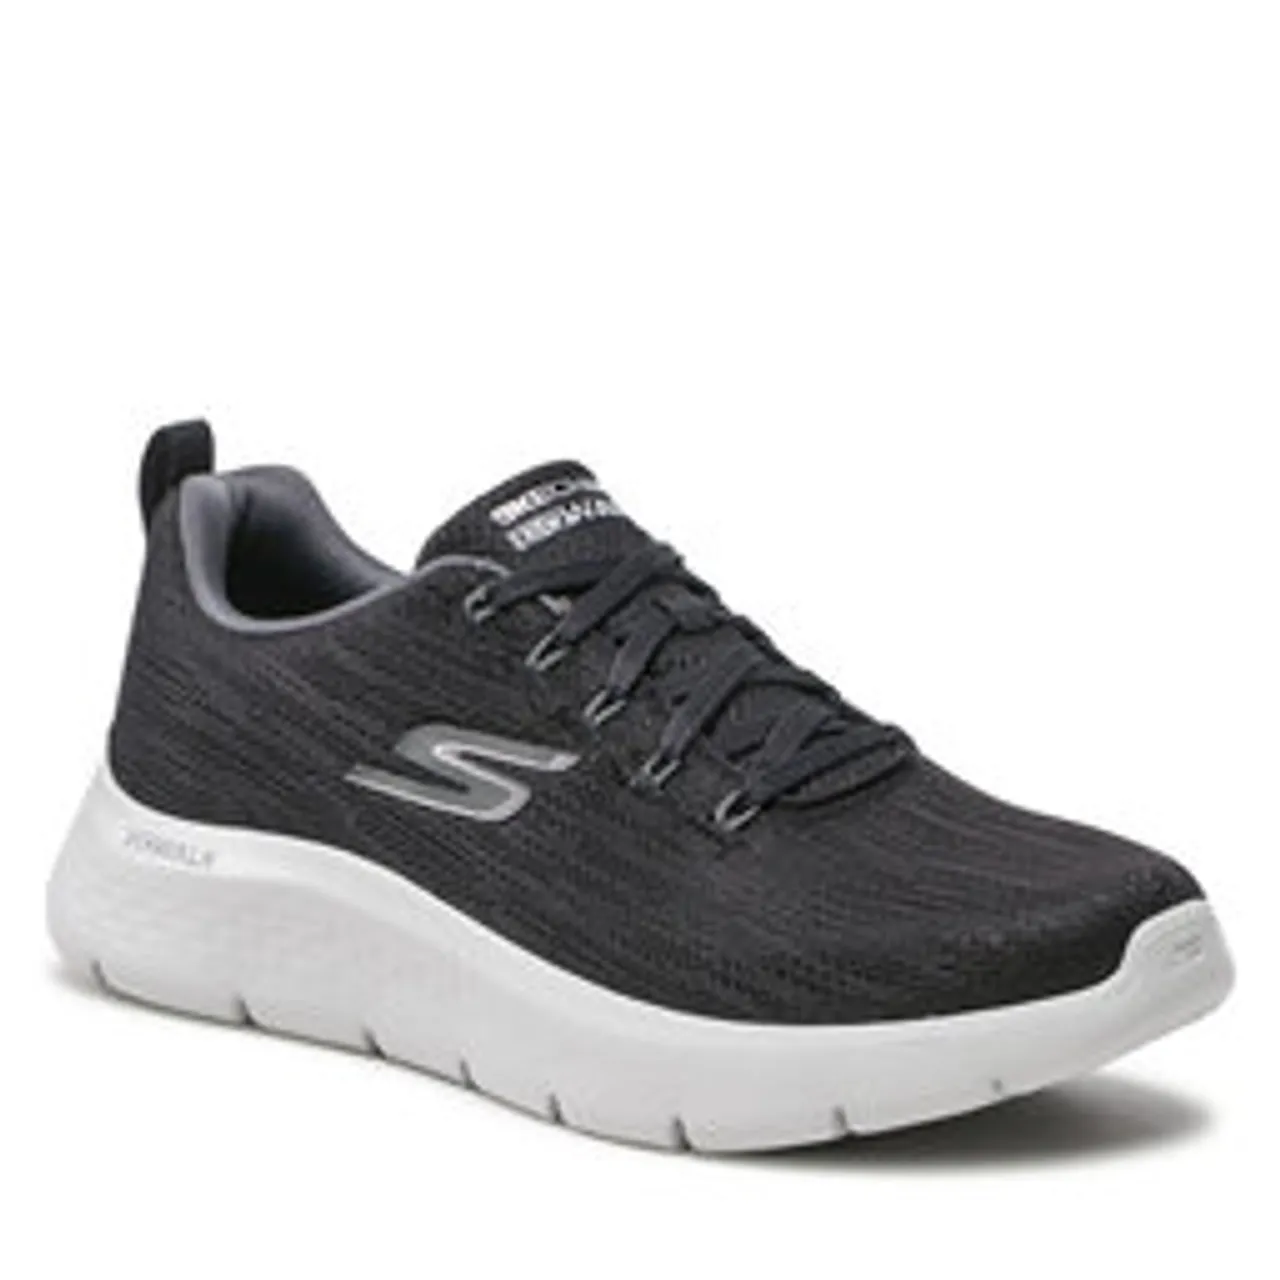 Sneakers Skechers Go Walk Flex 216481/BKGY Black/Gray